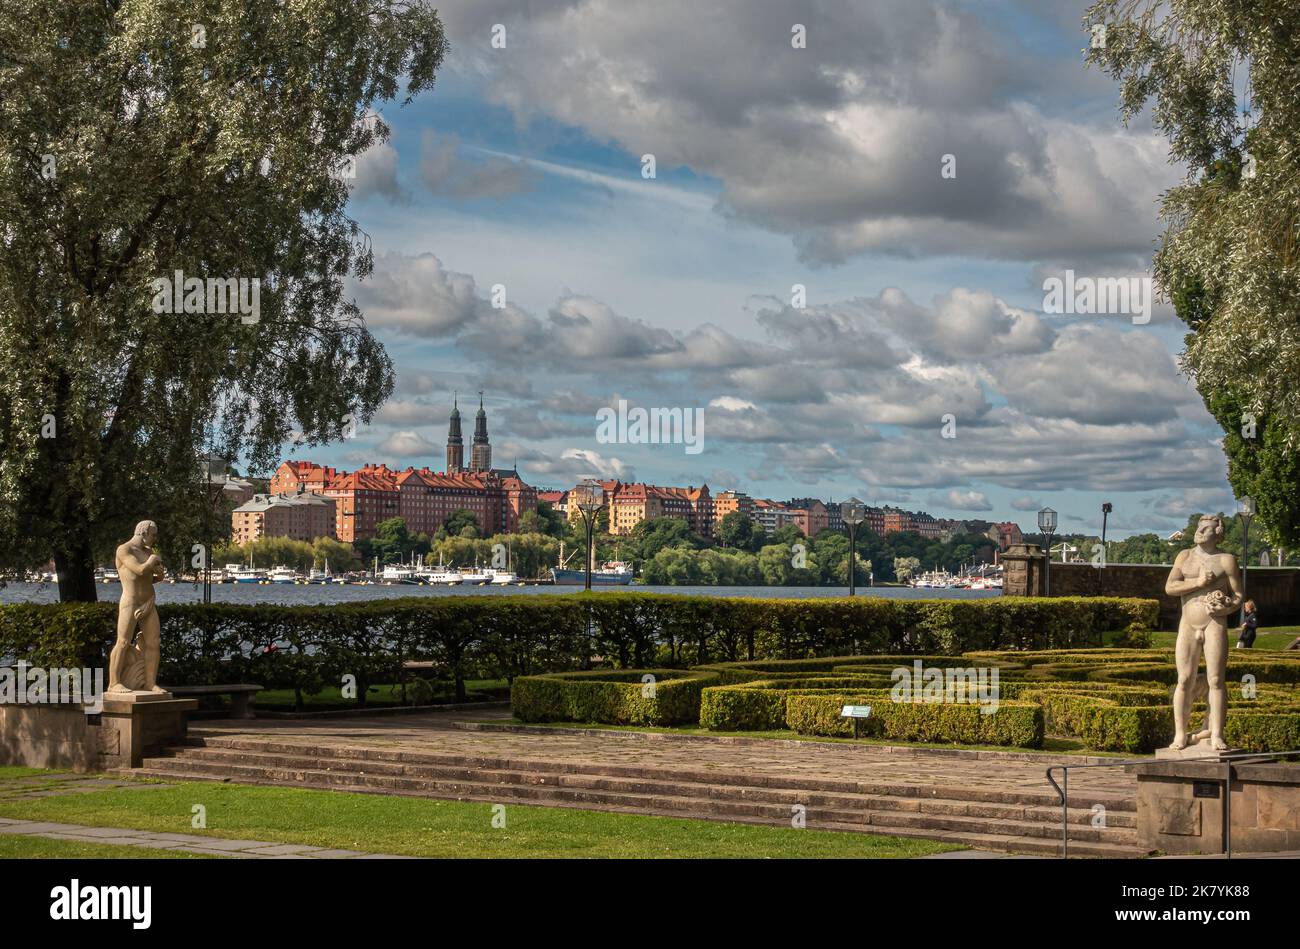 Svezia, Stoccolma - 16 luglio 2022: Municipio o giardino Stadshuset, lato ovest con 2 statue maschili di pietra. La chiesa di Hogalid sovrasta gli edifici a sud Foto Stock